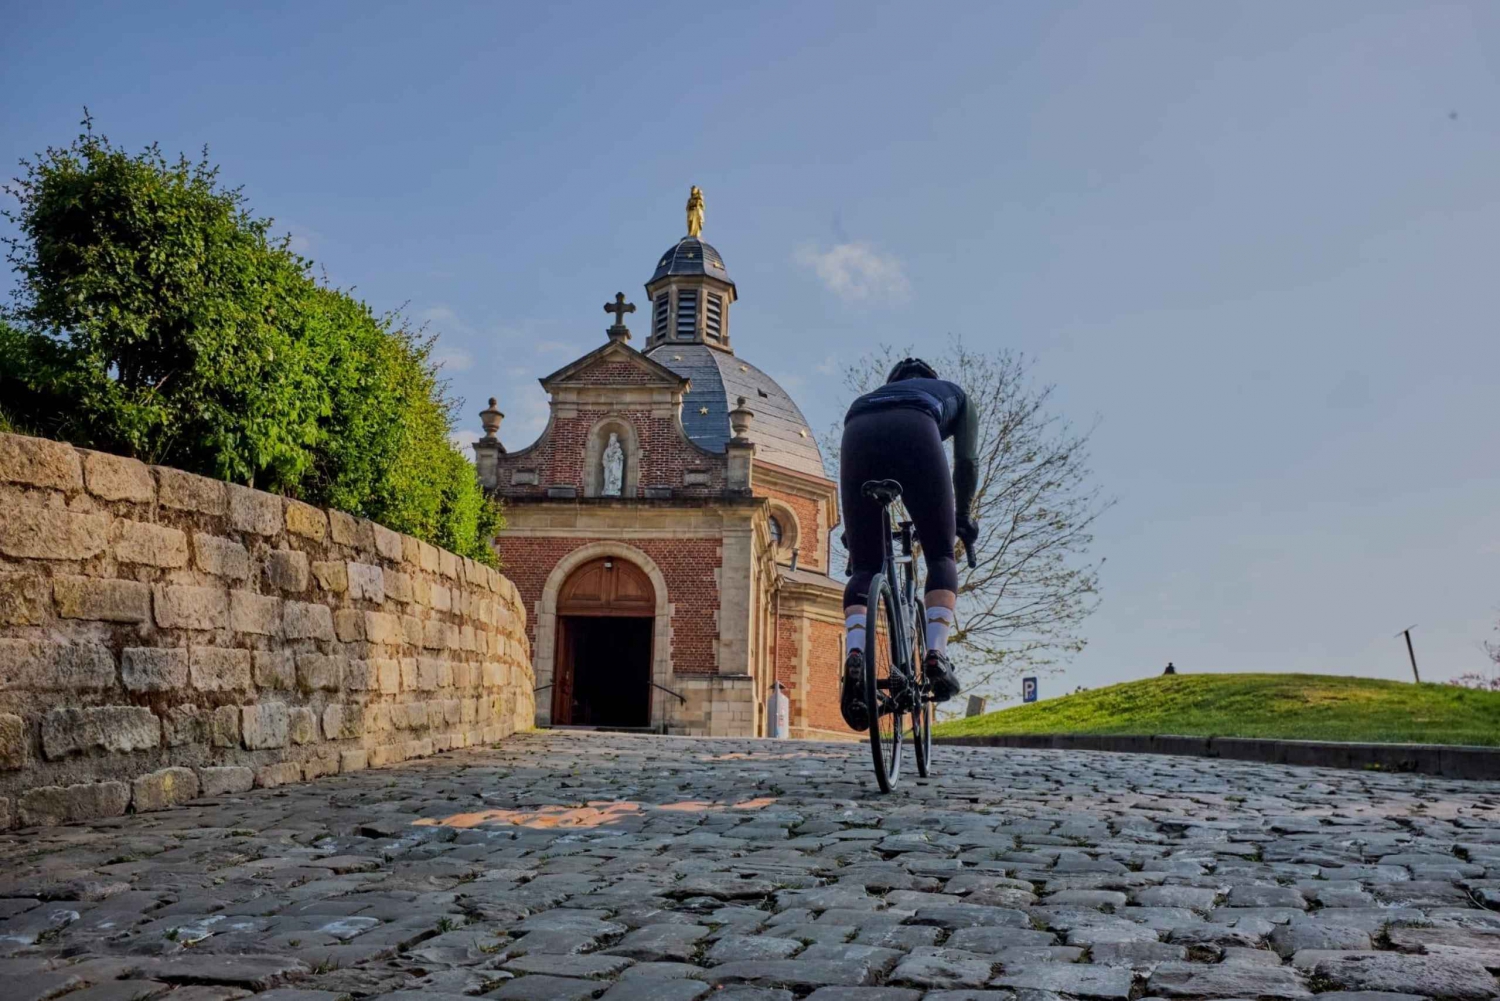 Von Brüssel nach Flandern 100 km Rennradtour